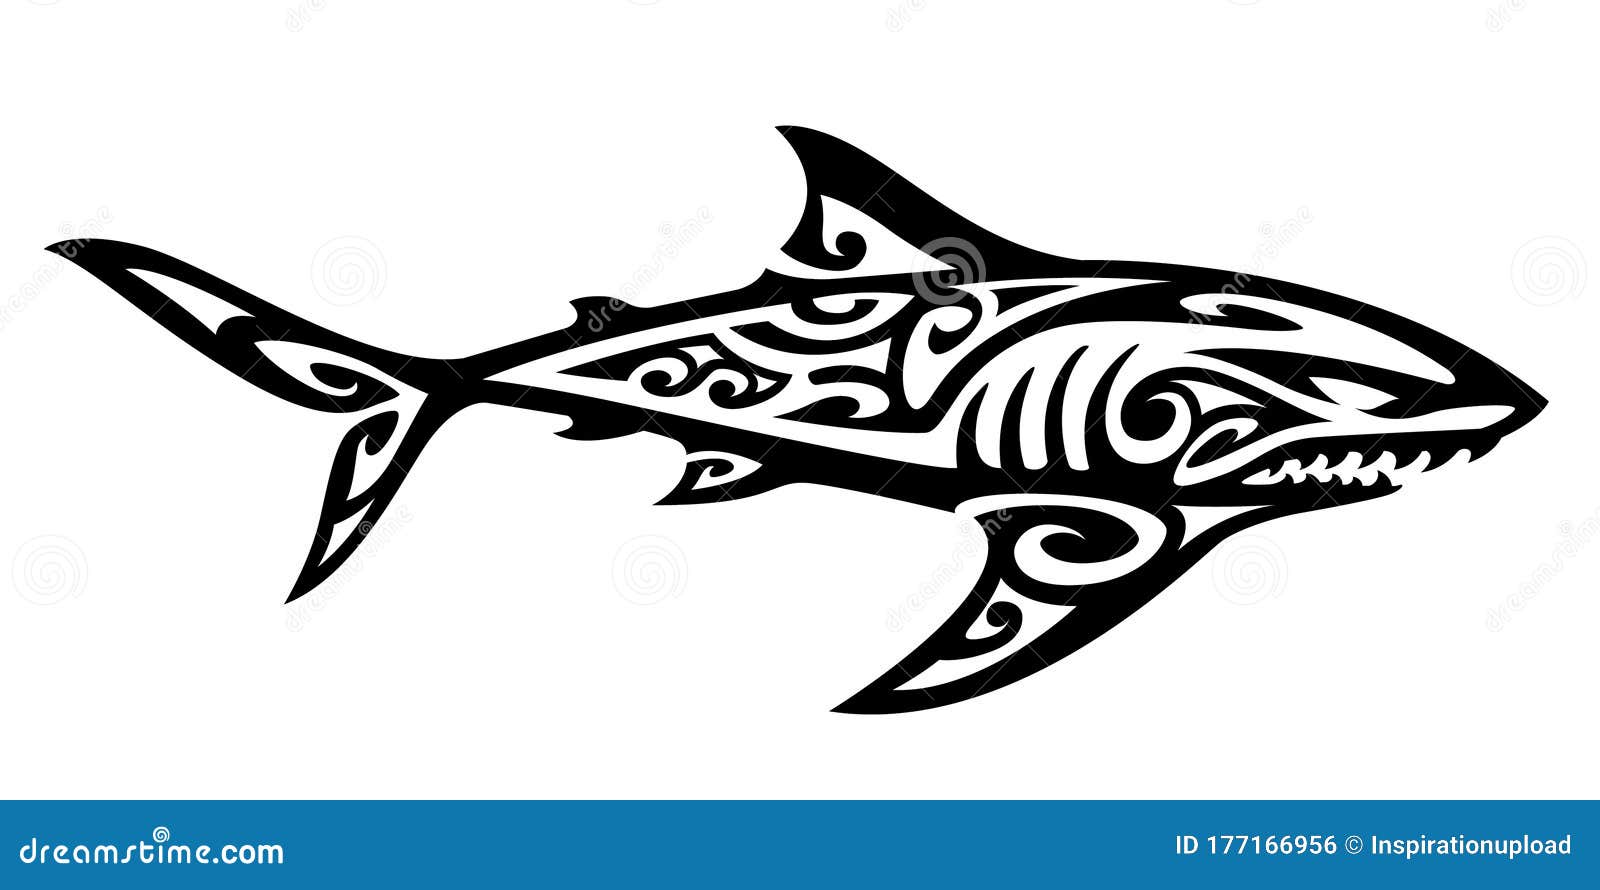 Tribal Shark Tattoo For Women